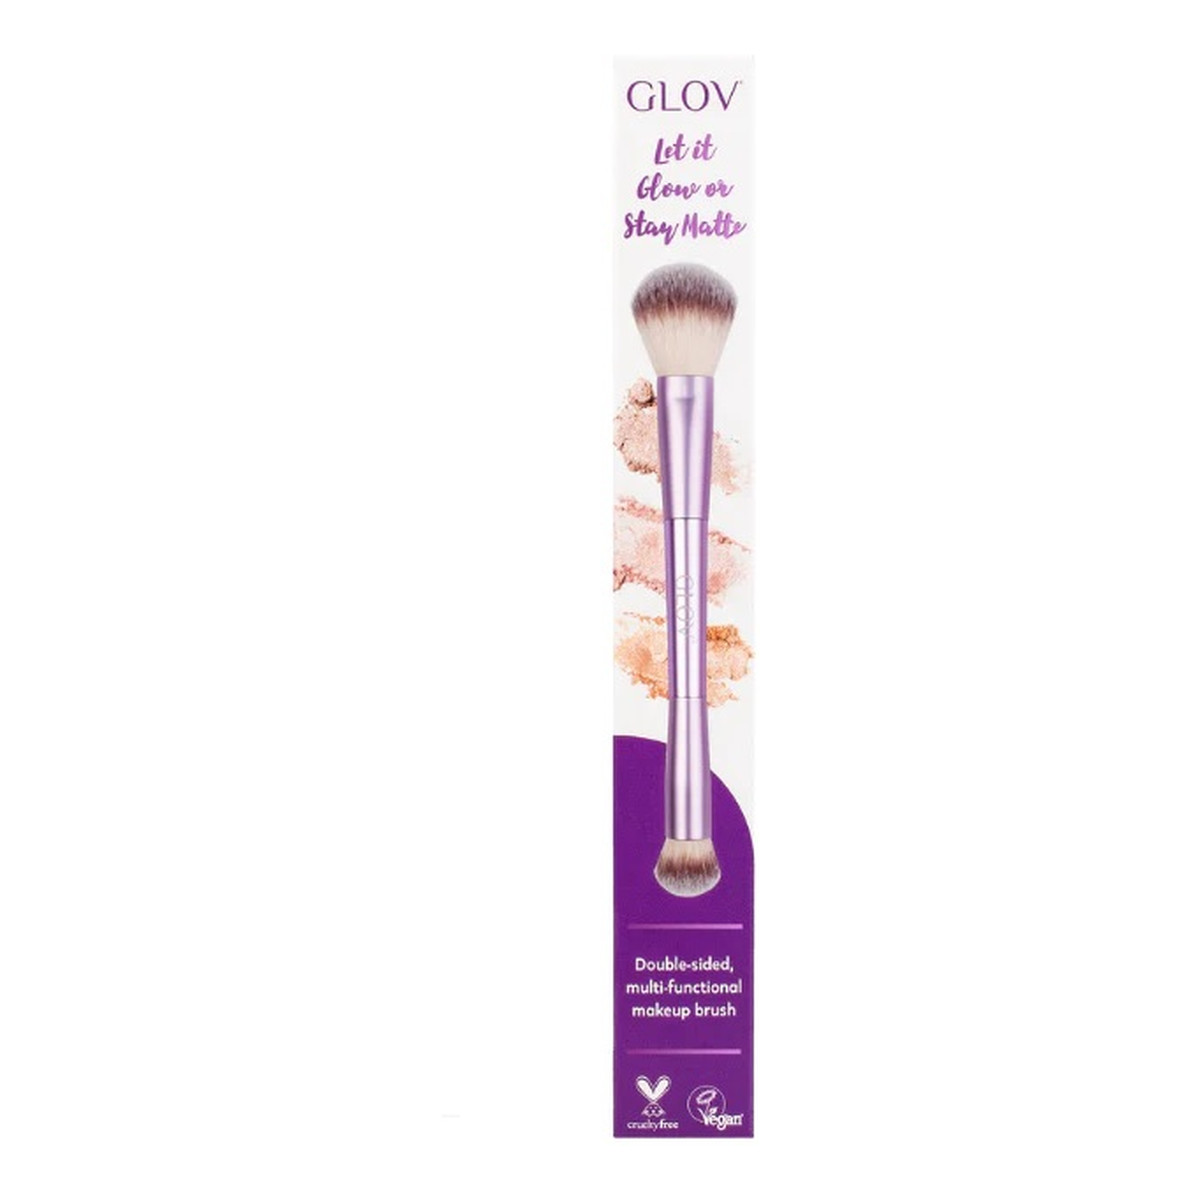 Glov Multifunction Brush wielofunkcyjny pędzel do makijażu Let It Glov or Stay Matte